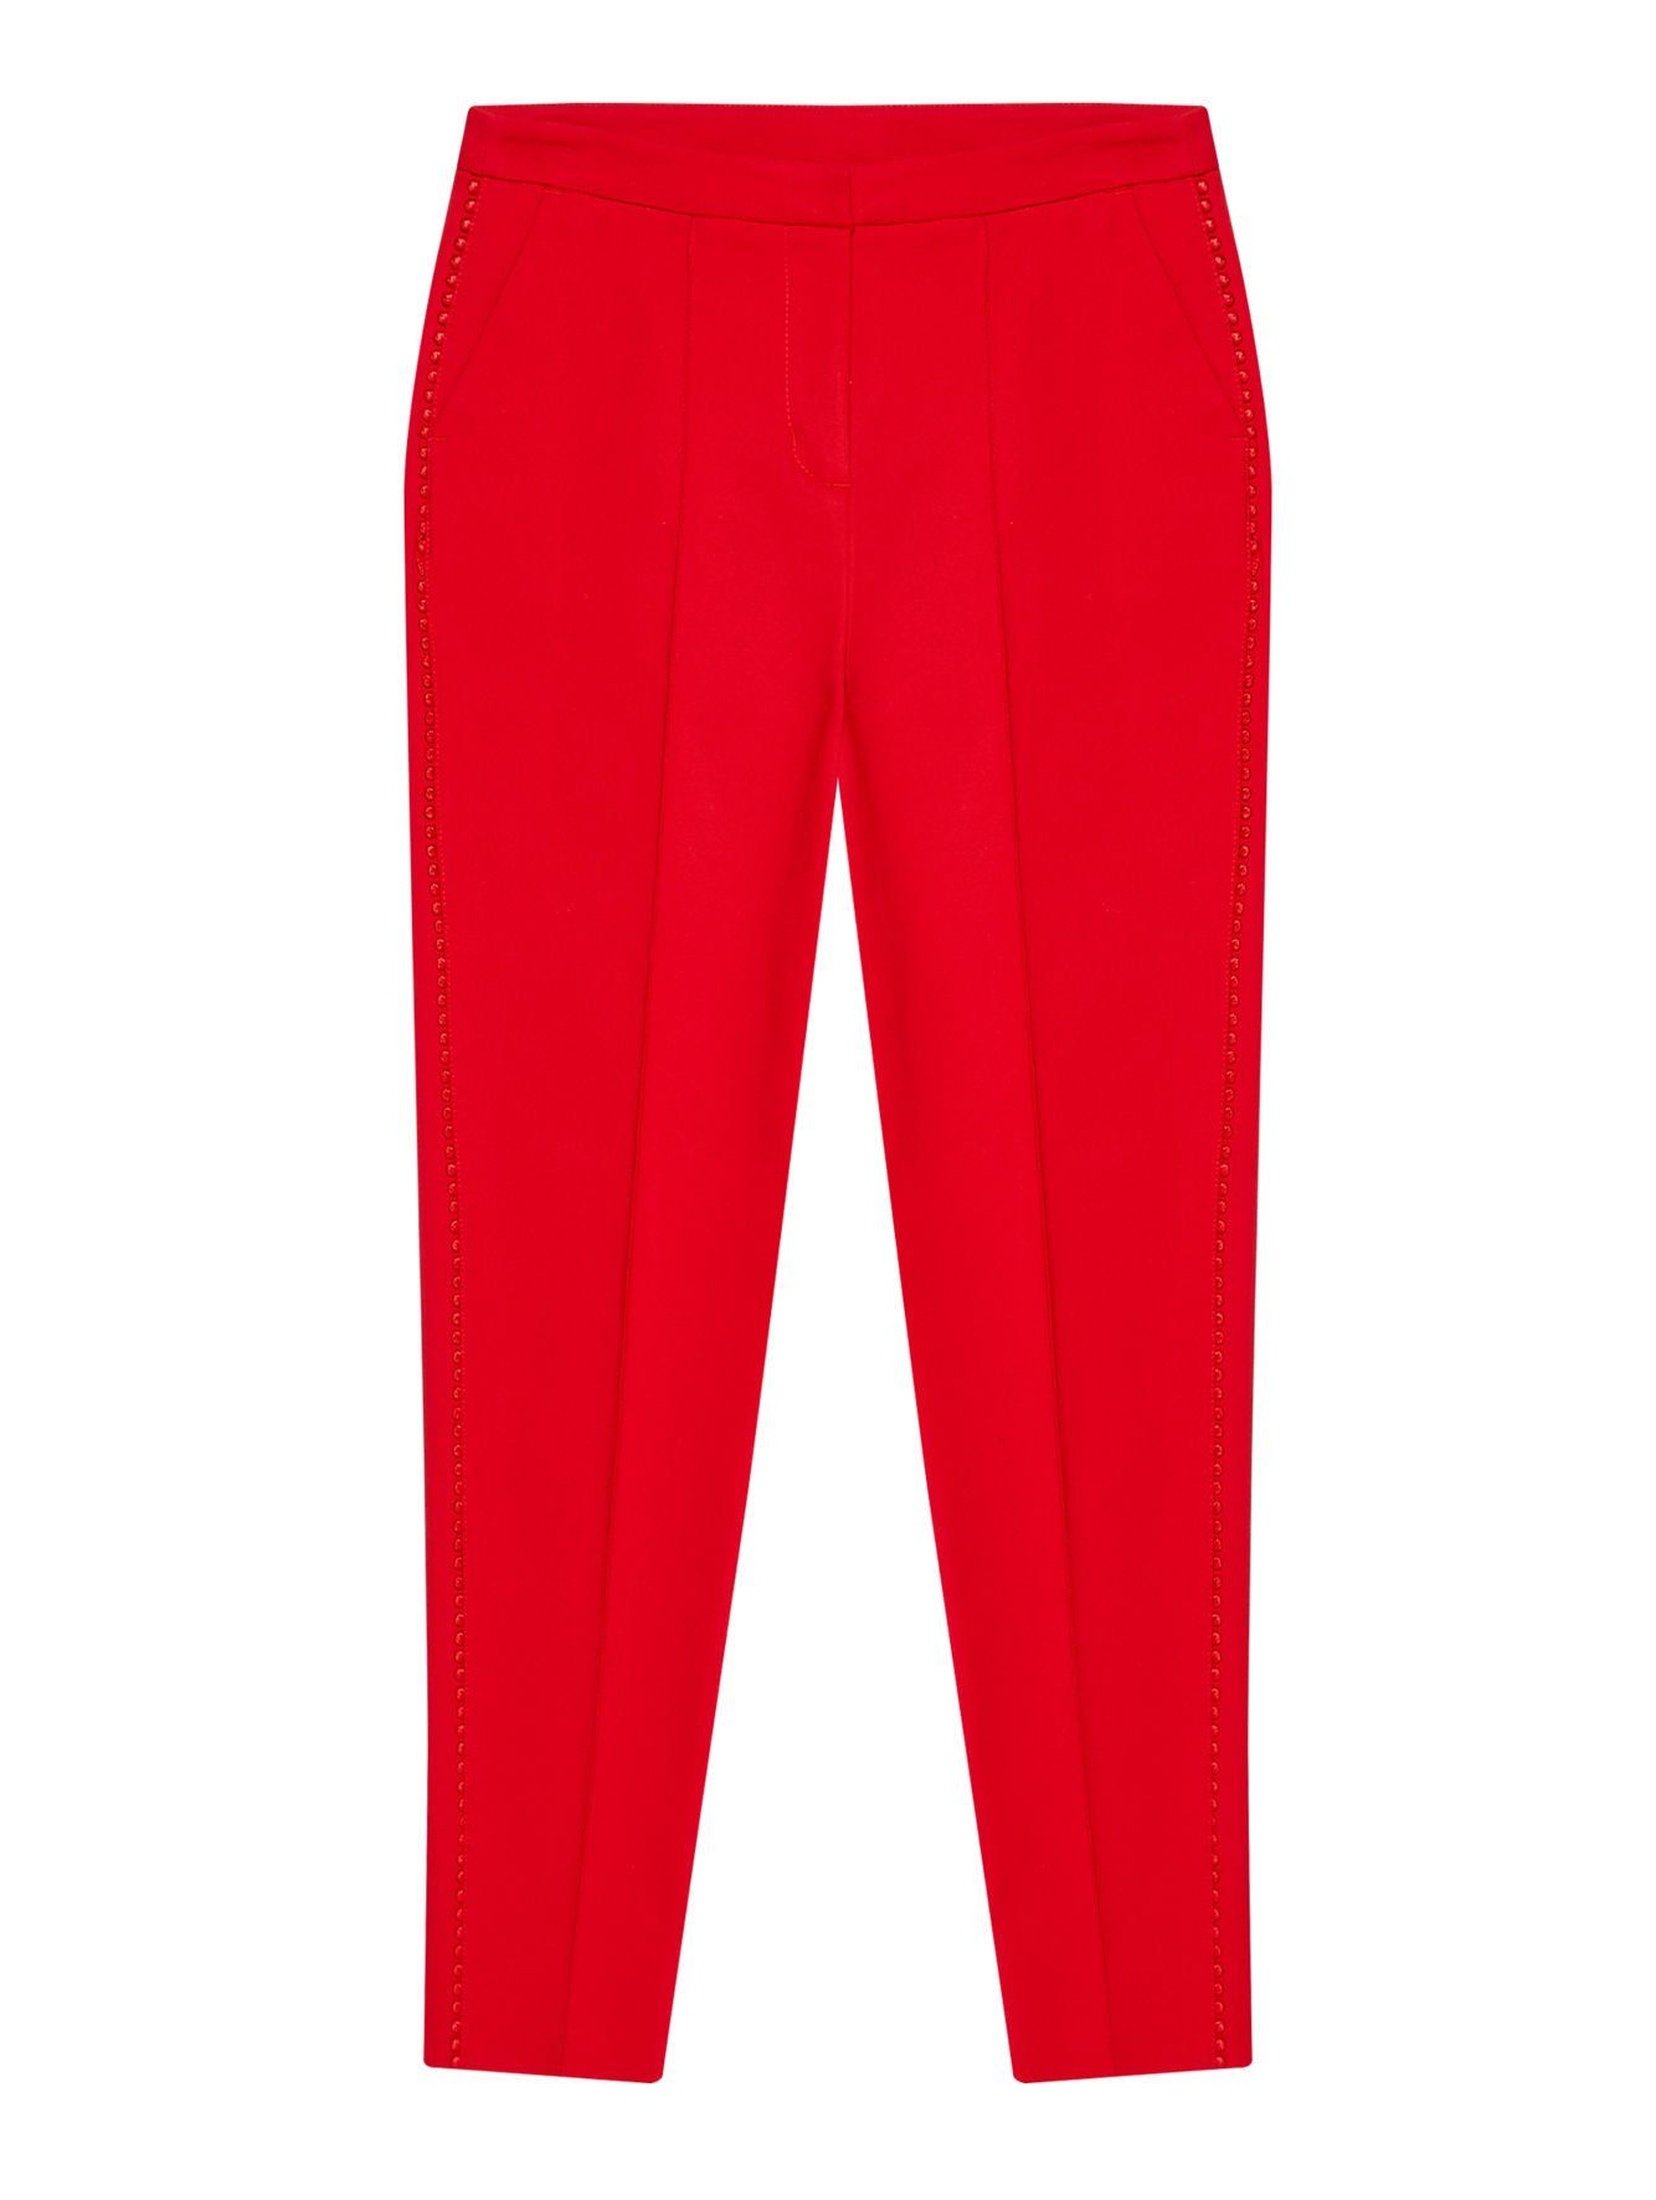 Spodnie damskie z przeszyciami i ozdobnymi lamówkami- czerwone